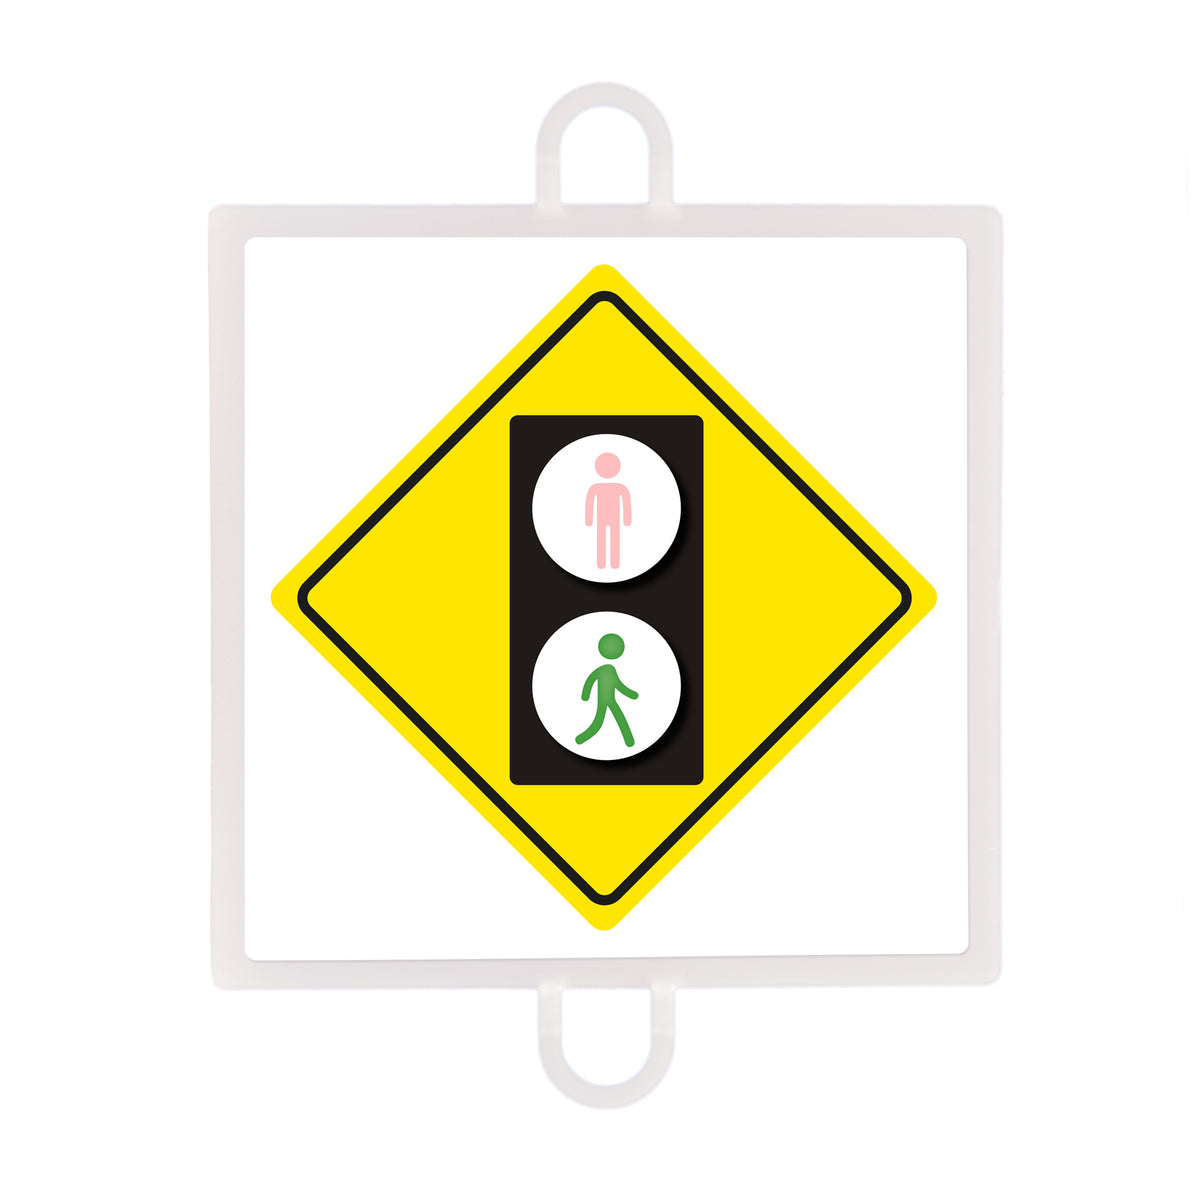 Panel De Señalización Tráfico De Advertencia Nº 4 (Peatones Verde)